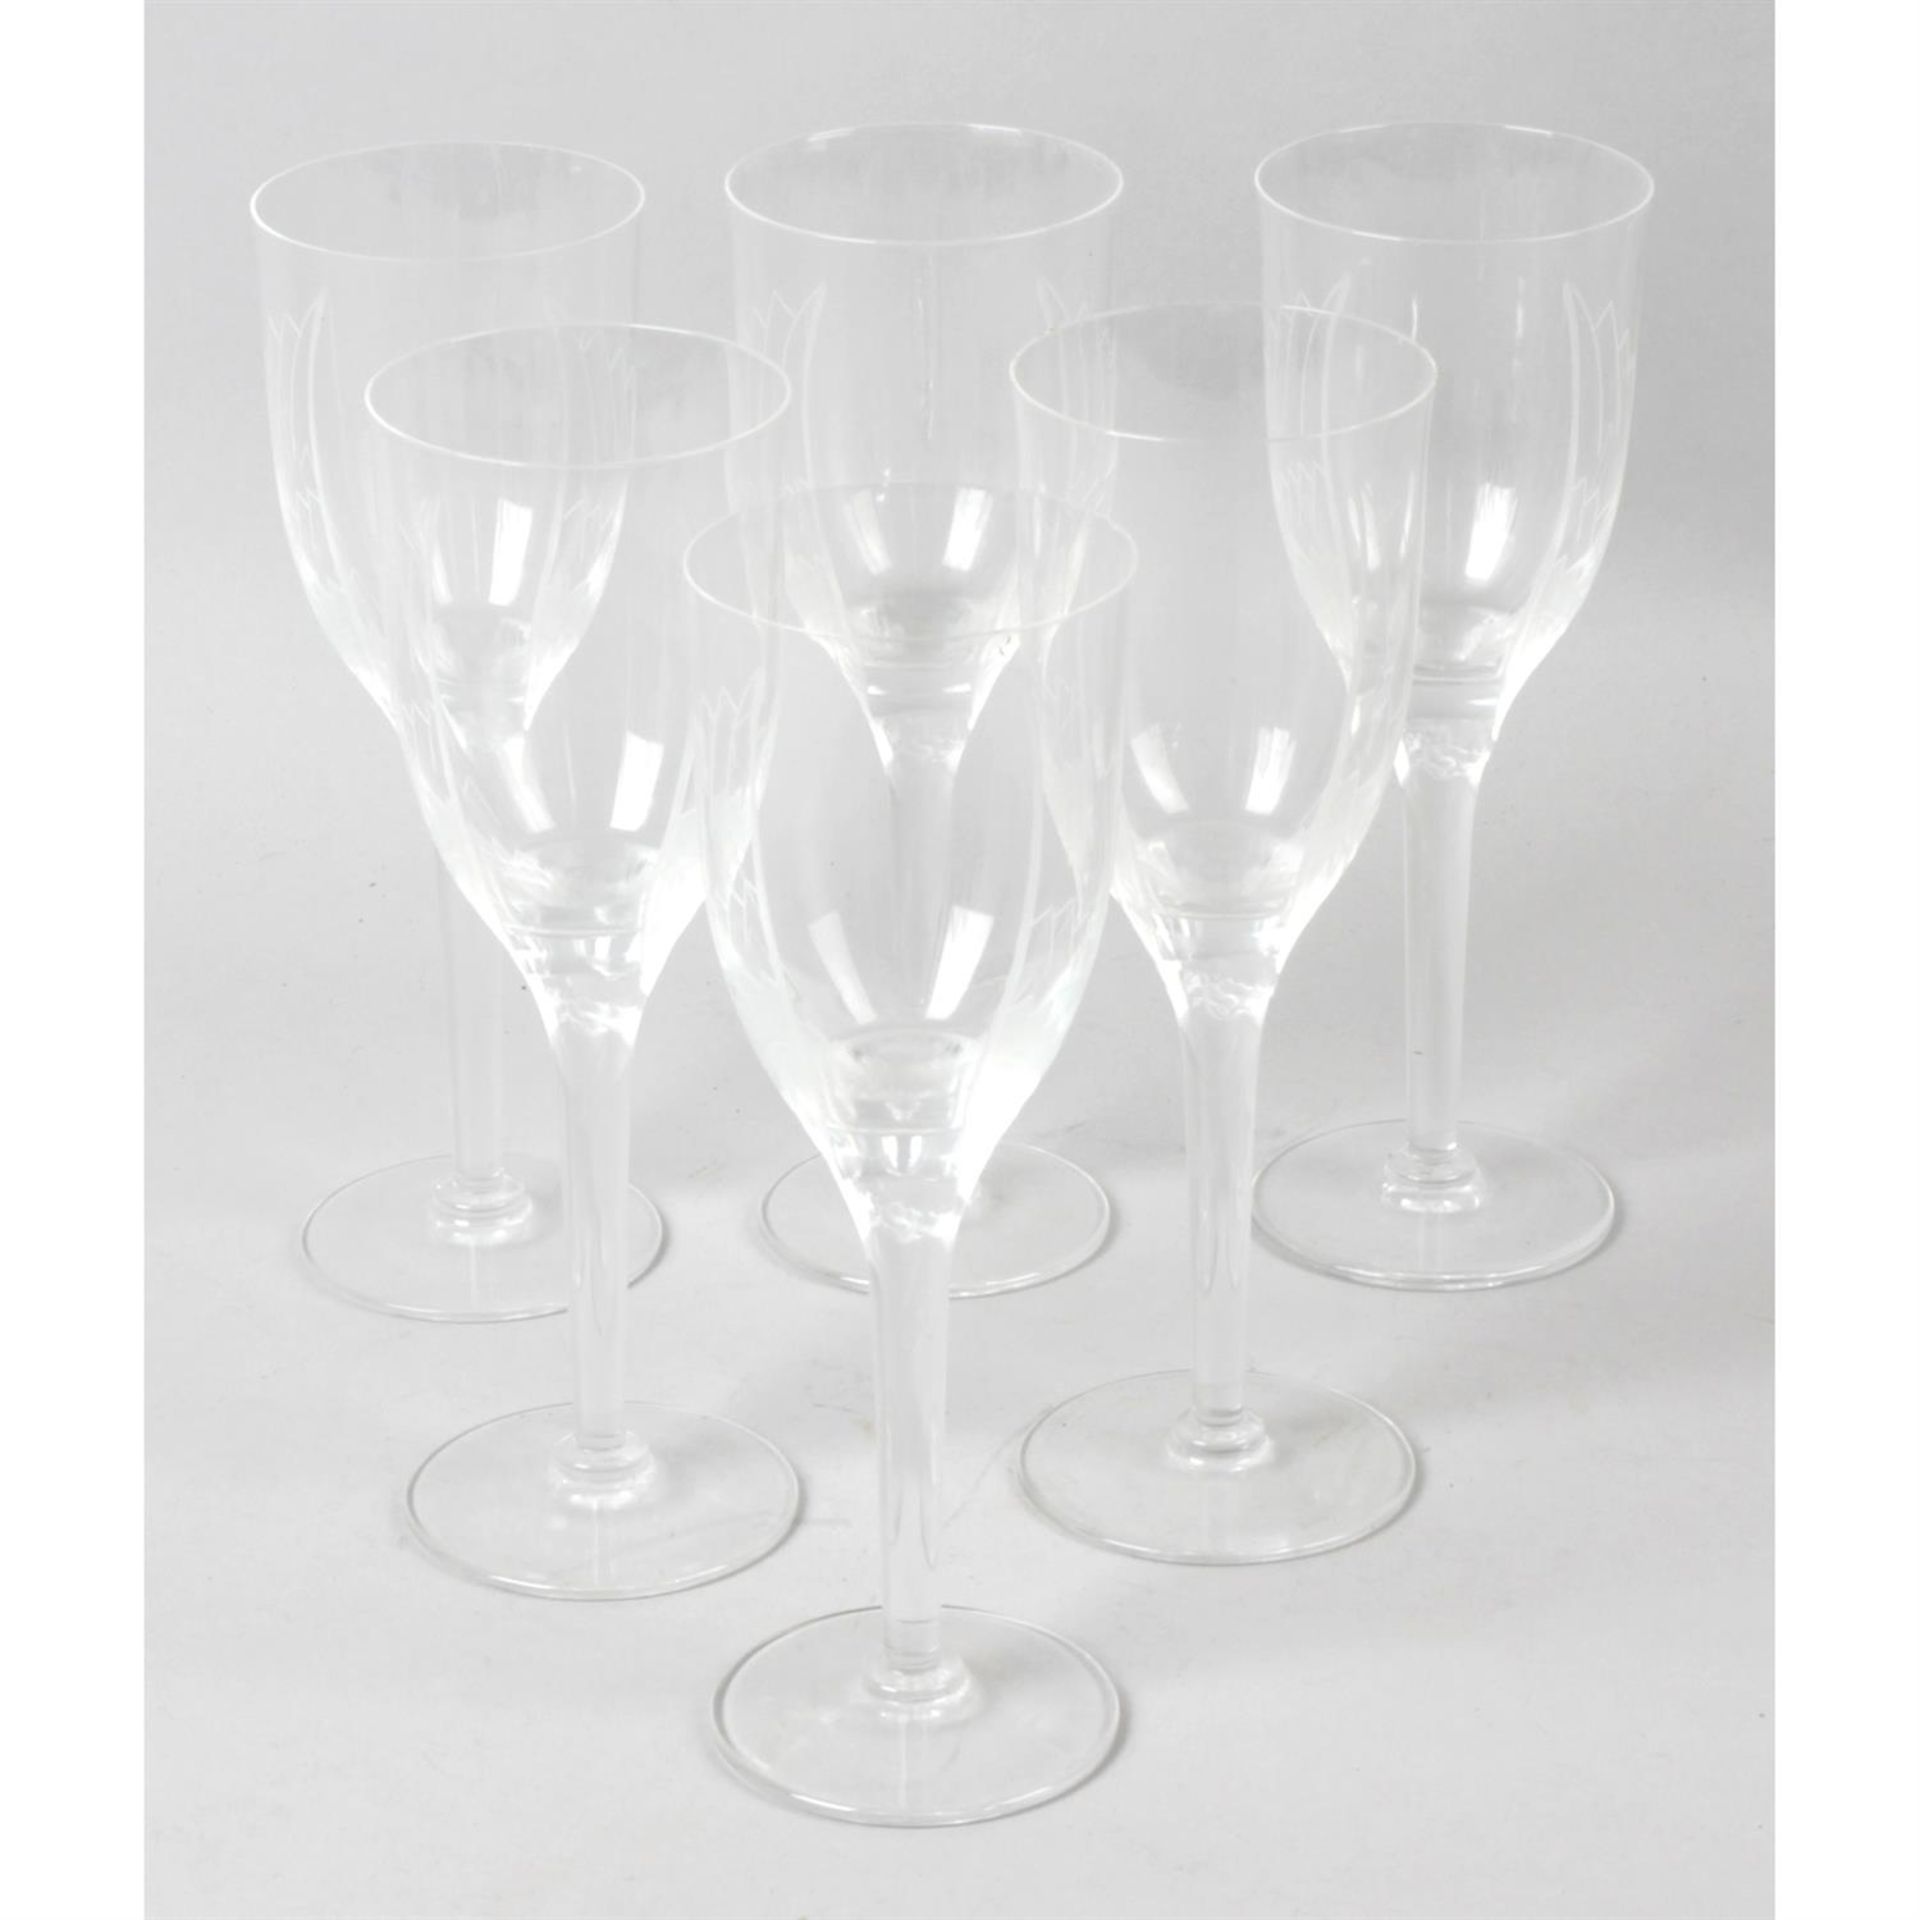 A set of six Lalique 'Angel' champagne glasses.